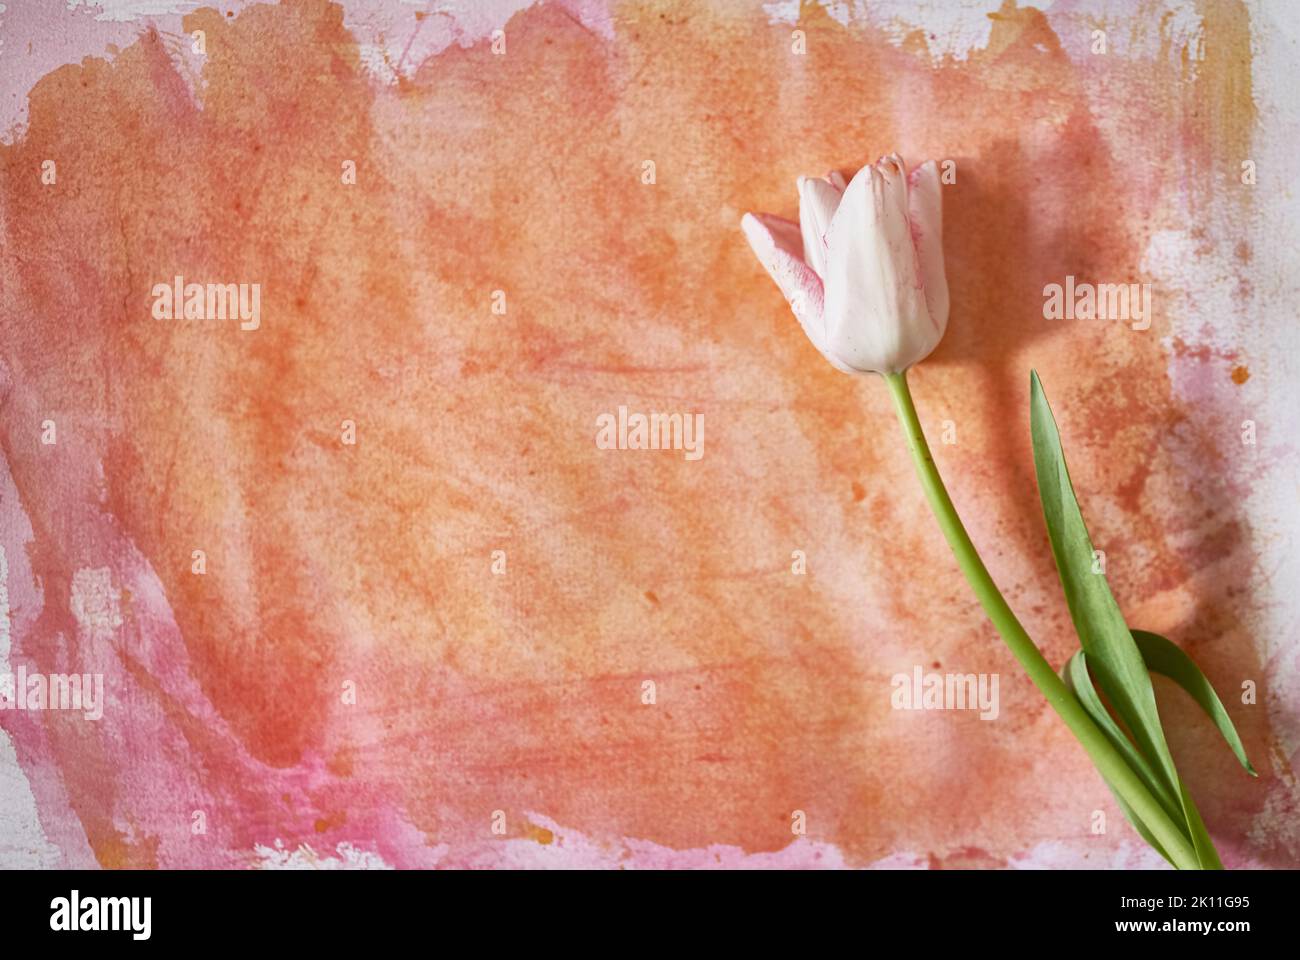 Un tulipano bianco è sdraiato su una carta dipinta con acquerello arancione. Un elegante tulipano per il tuo design. Acquerello con spazio da copiare. Foto di alta qualità Foto Stock